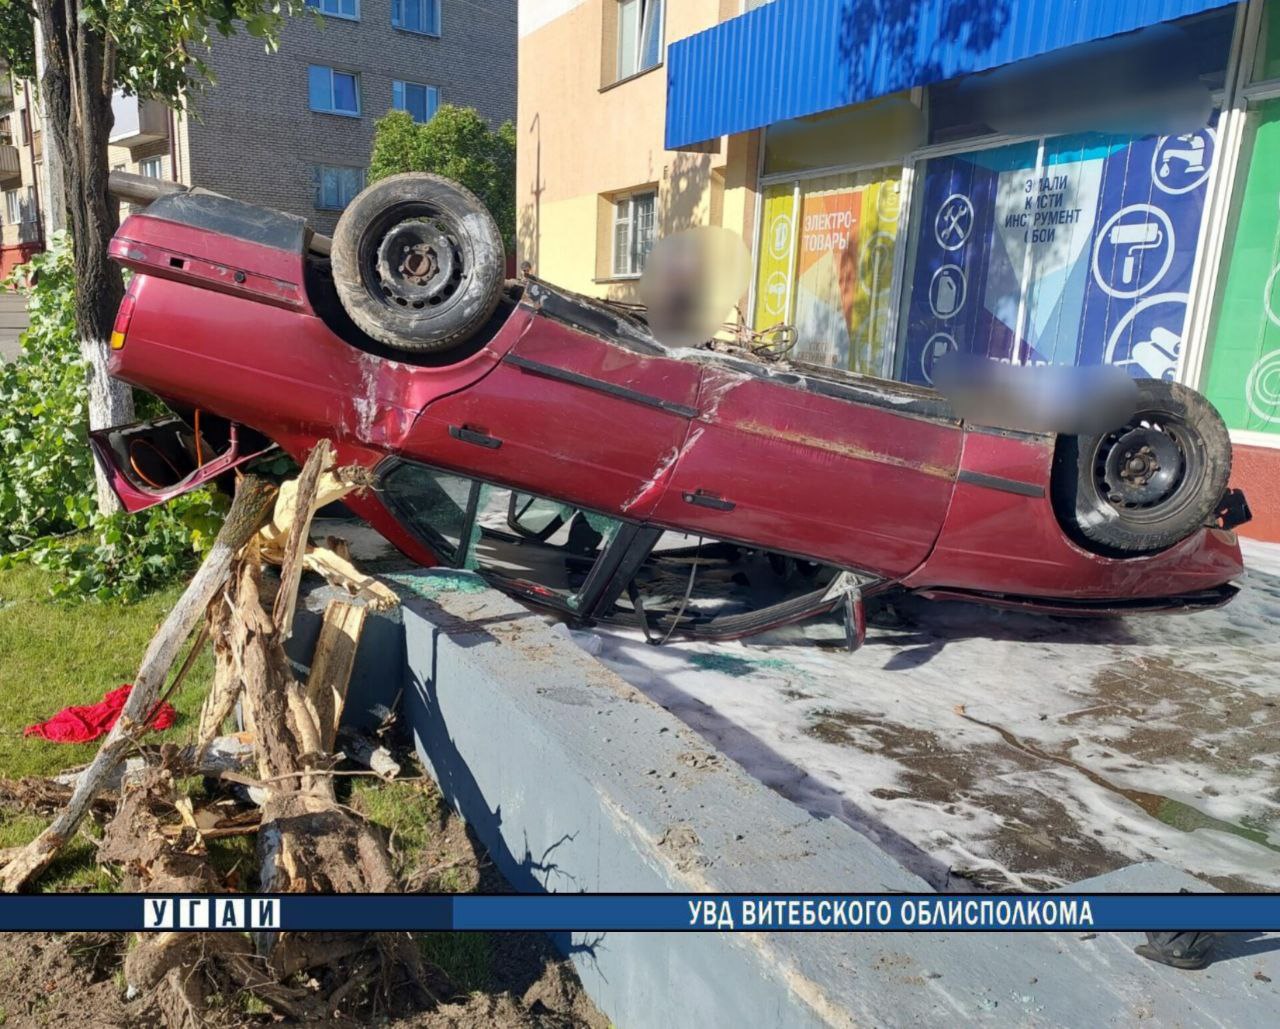 «BMW» едва не влетела в магазин в Витебске. Видео